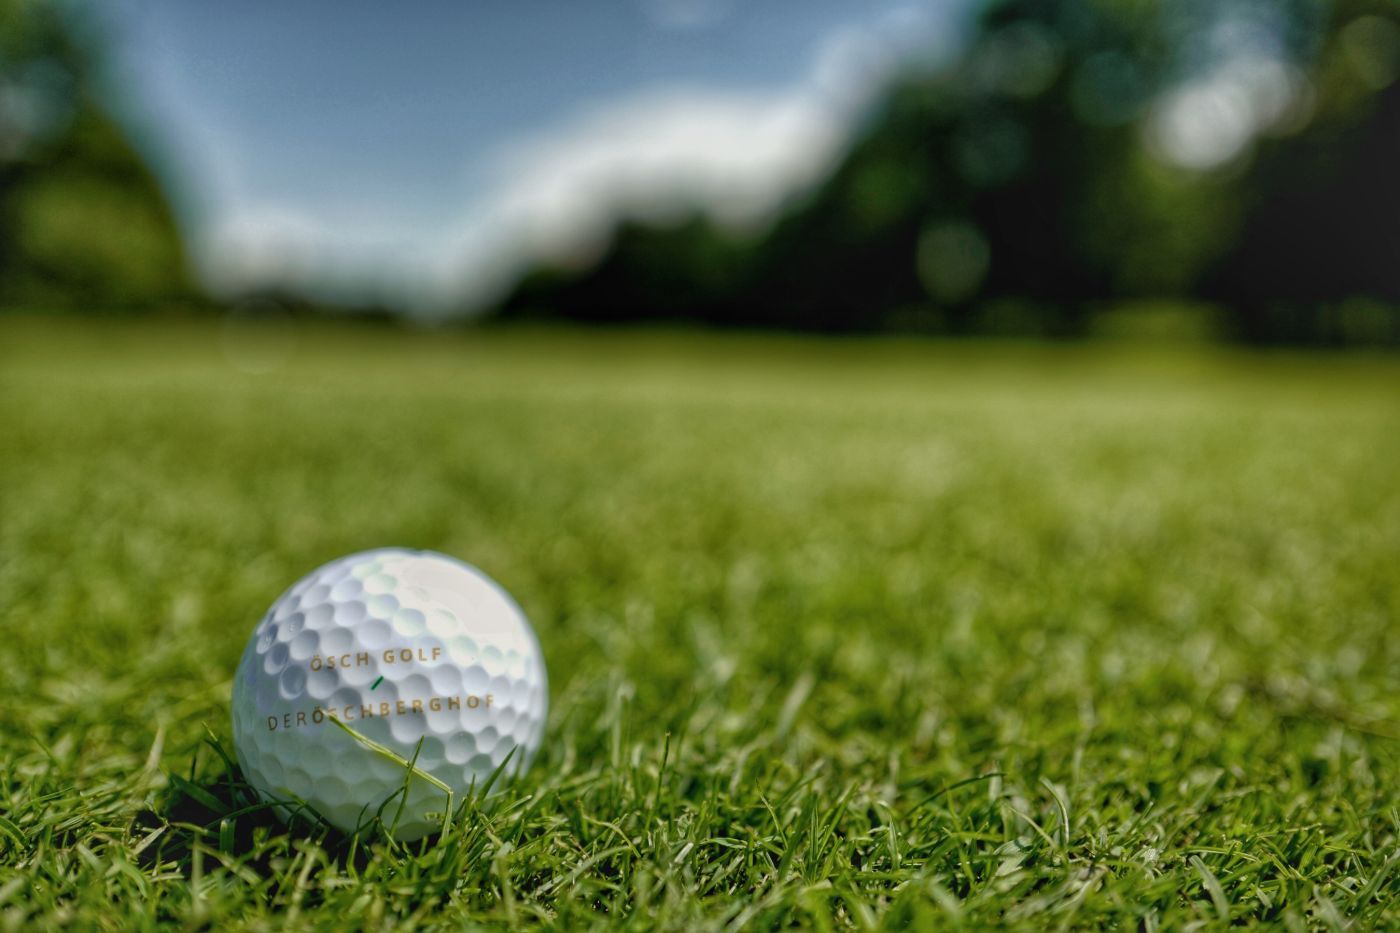 Öschberghof Golfball liegt auf dem Rasen